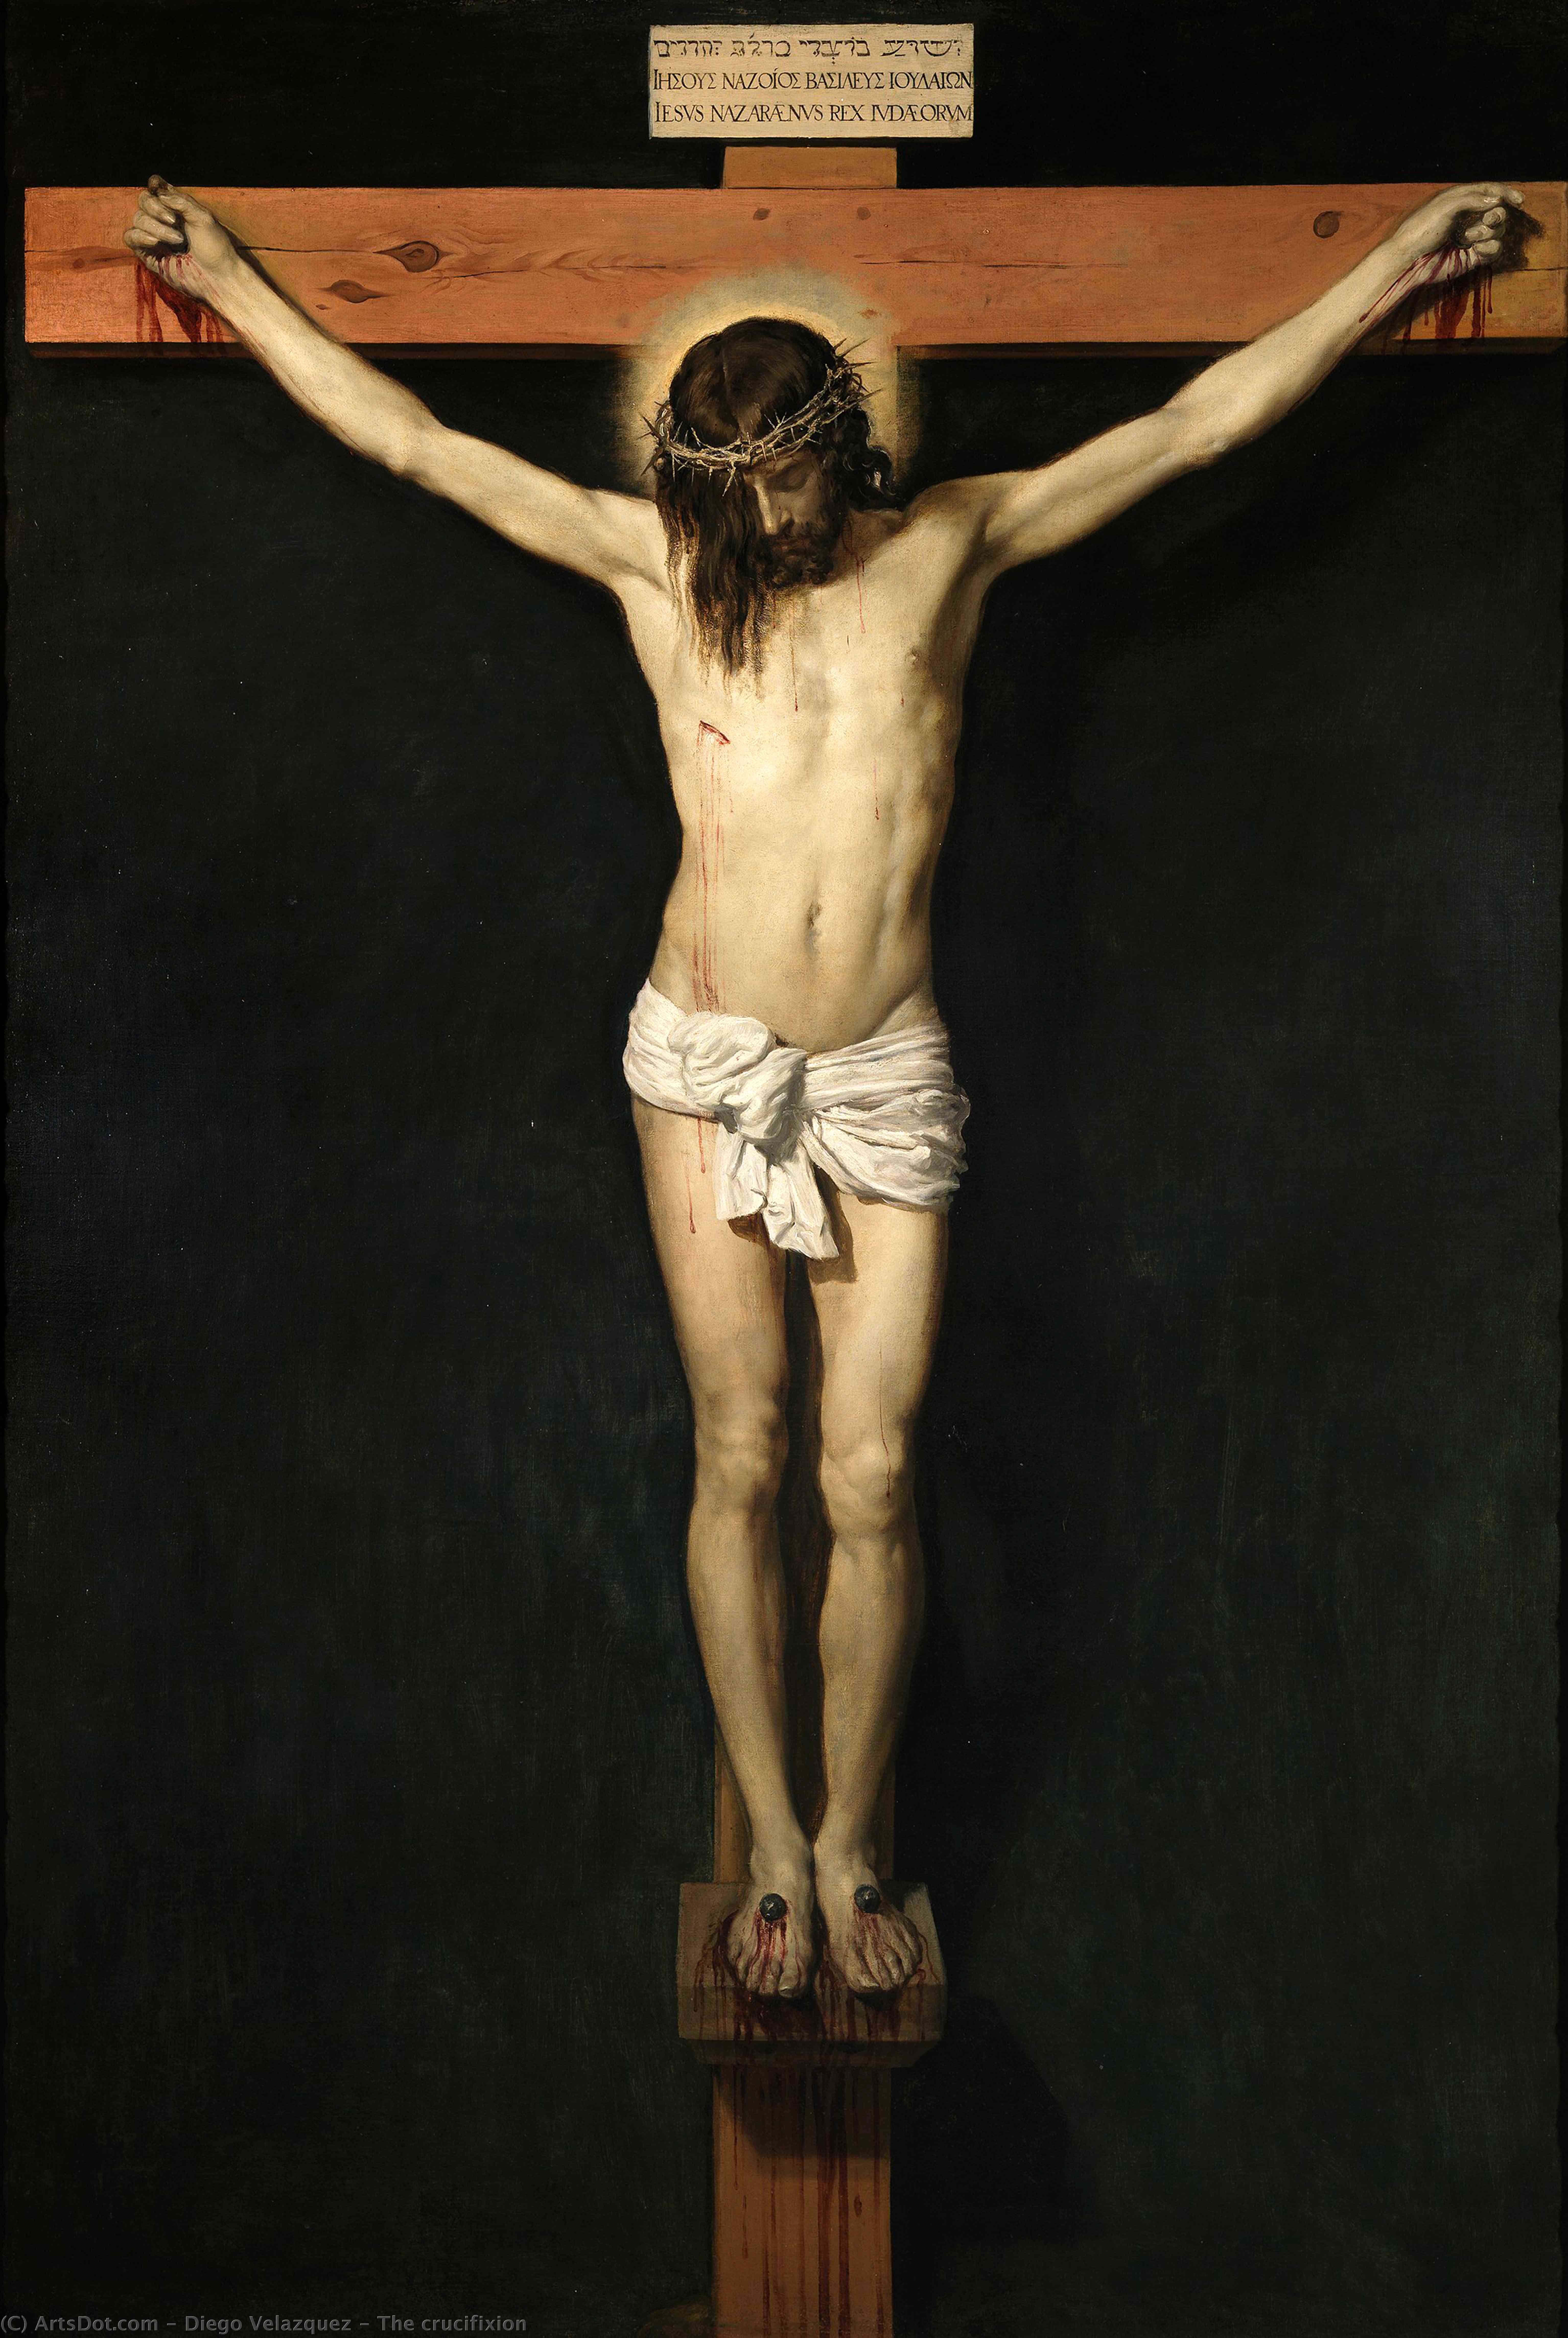 WikiOO.org - Enciclopédia das Belas Artes - Pintura, Arte por Diego Velazquez - The crucifixion